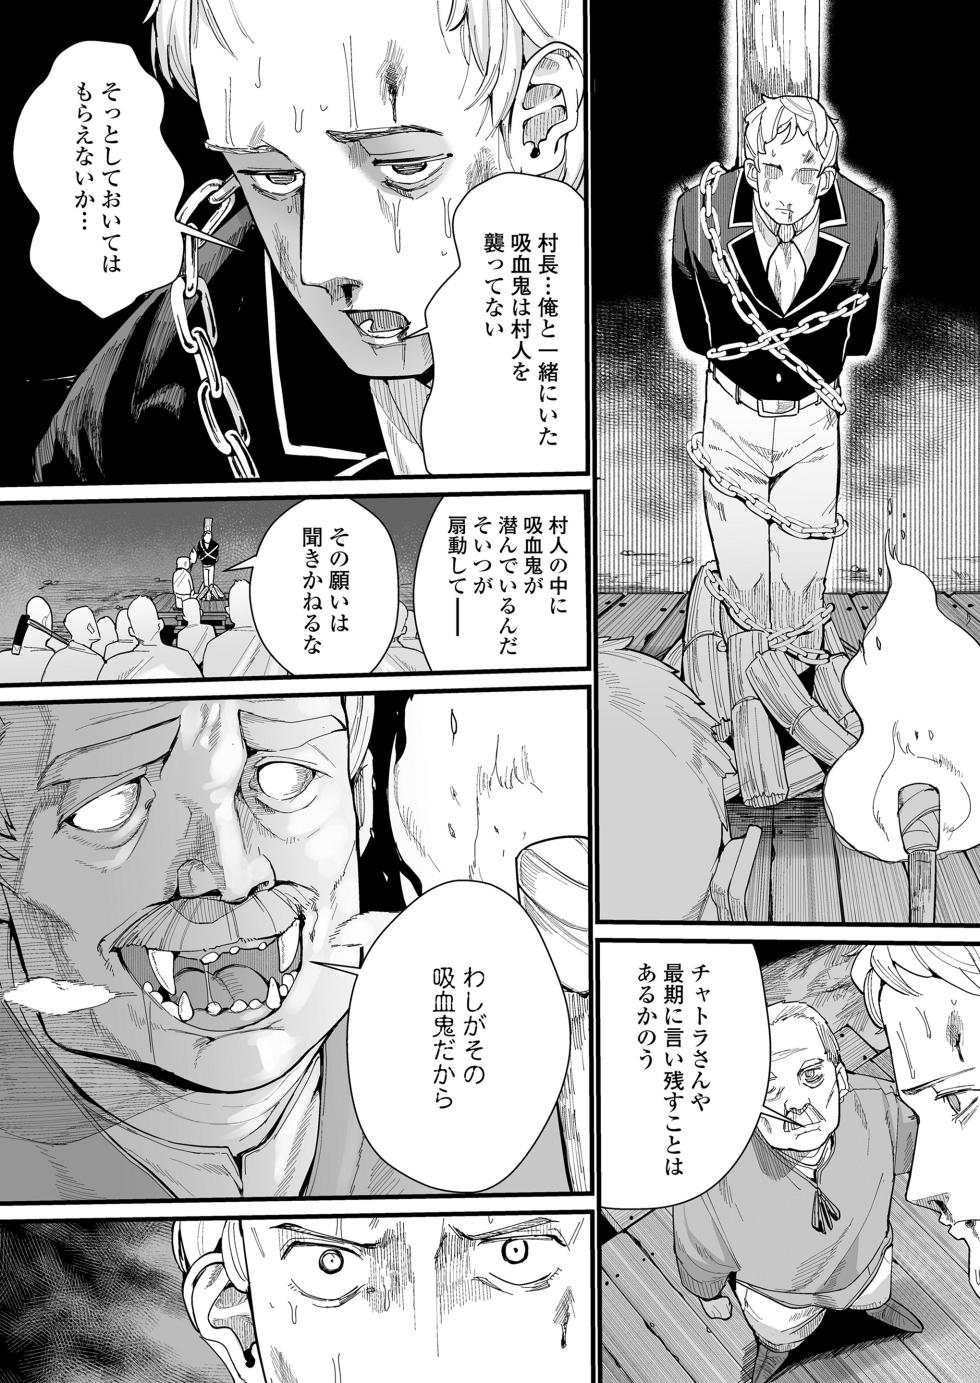 Towako 15 [Digital] - Page 34